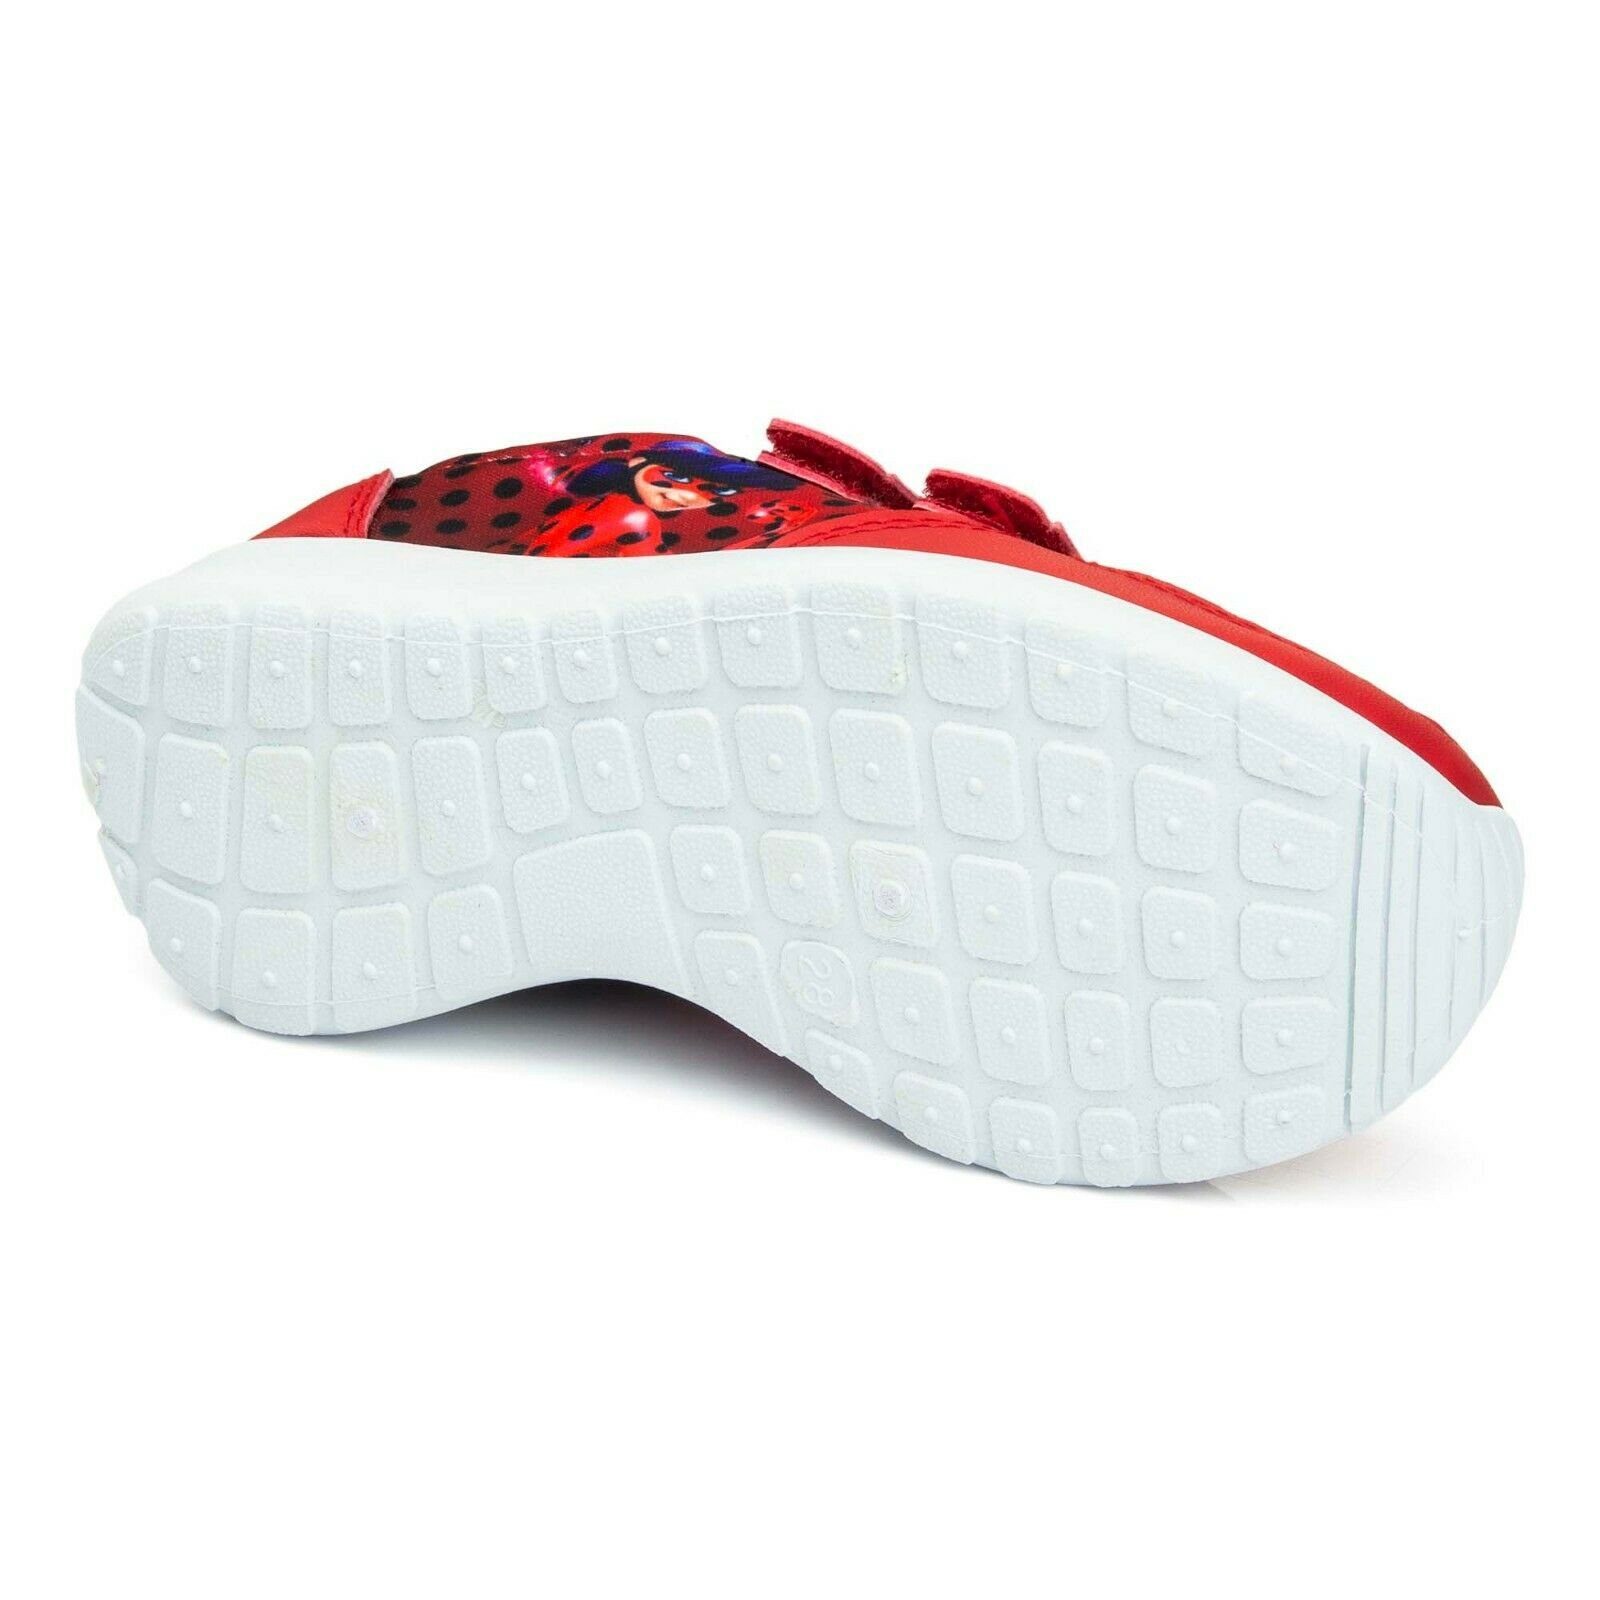 Miraculous - Ladybug Mädchenschuhe Kinder Miraculous Sneaker 29 Klettverschluss - 35 Schuhe Rot Gr